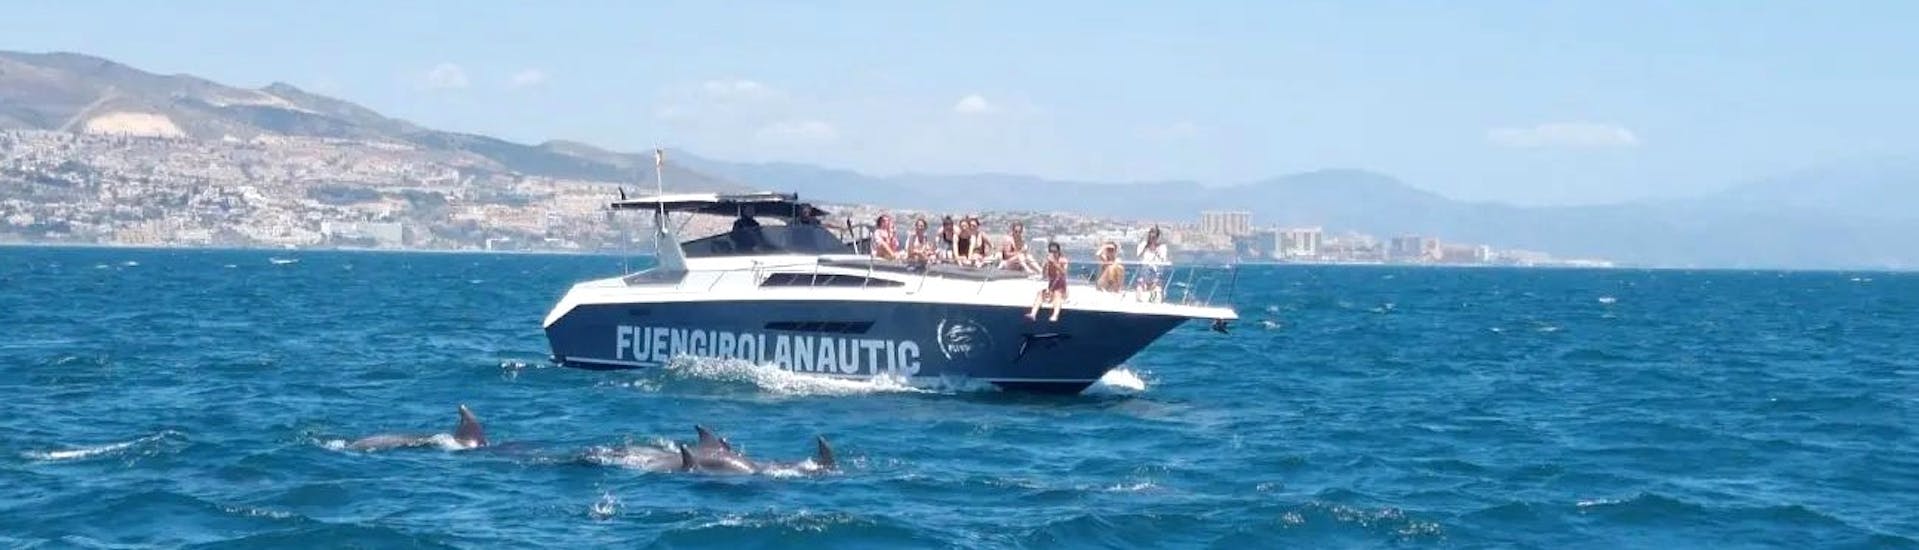 Menschen beobachten Delfine vom Boot aus während der Halbprivate Bootstour ab Fuengirola mit Delfinbeobachtung mit Fuengirolanautic.